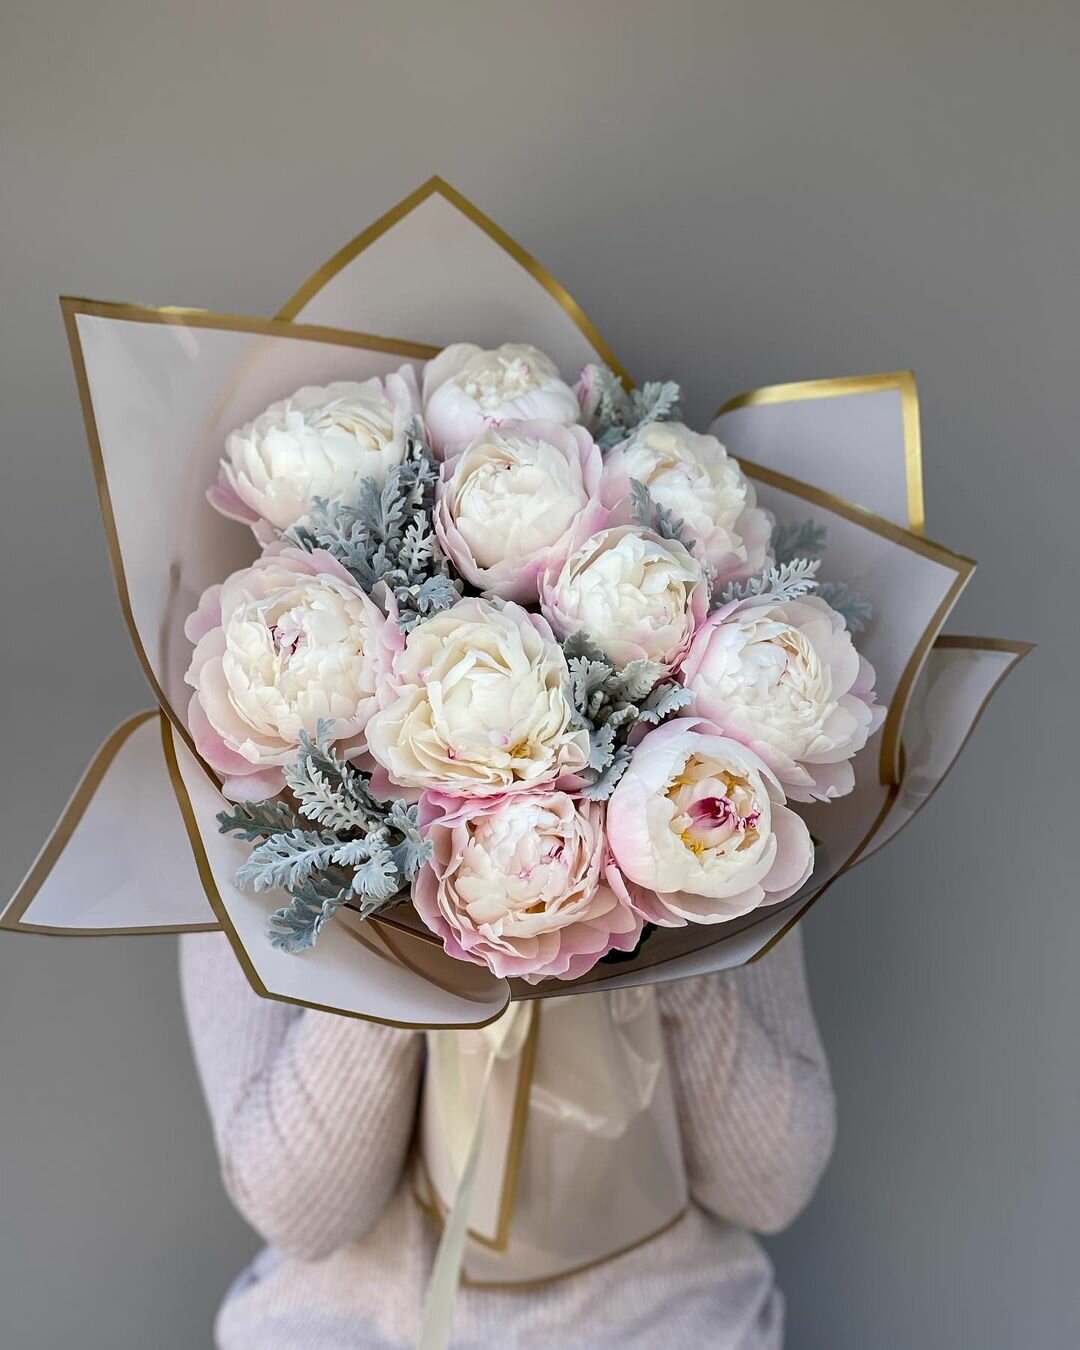 Премиум букет из розовых пионов, цветы премиум, шикарный, красивый букет цветов, пионы розовые.